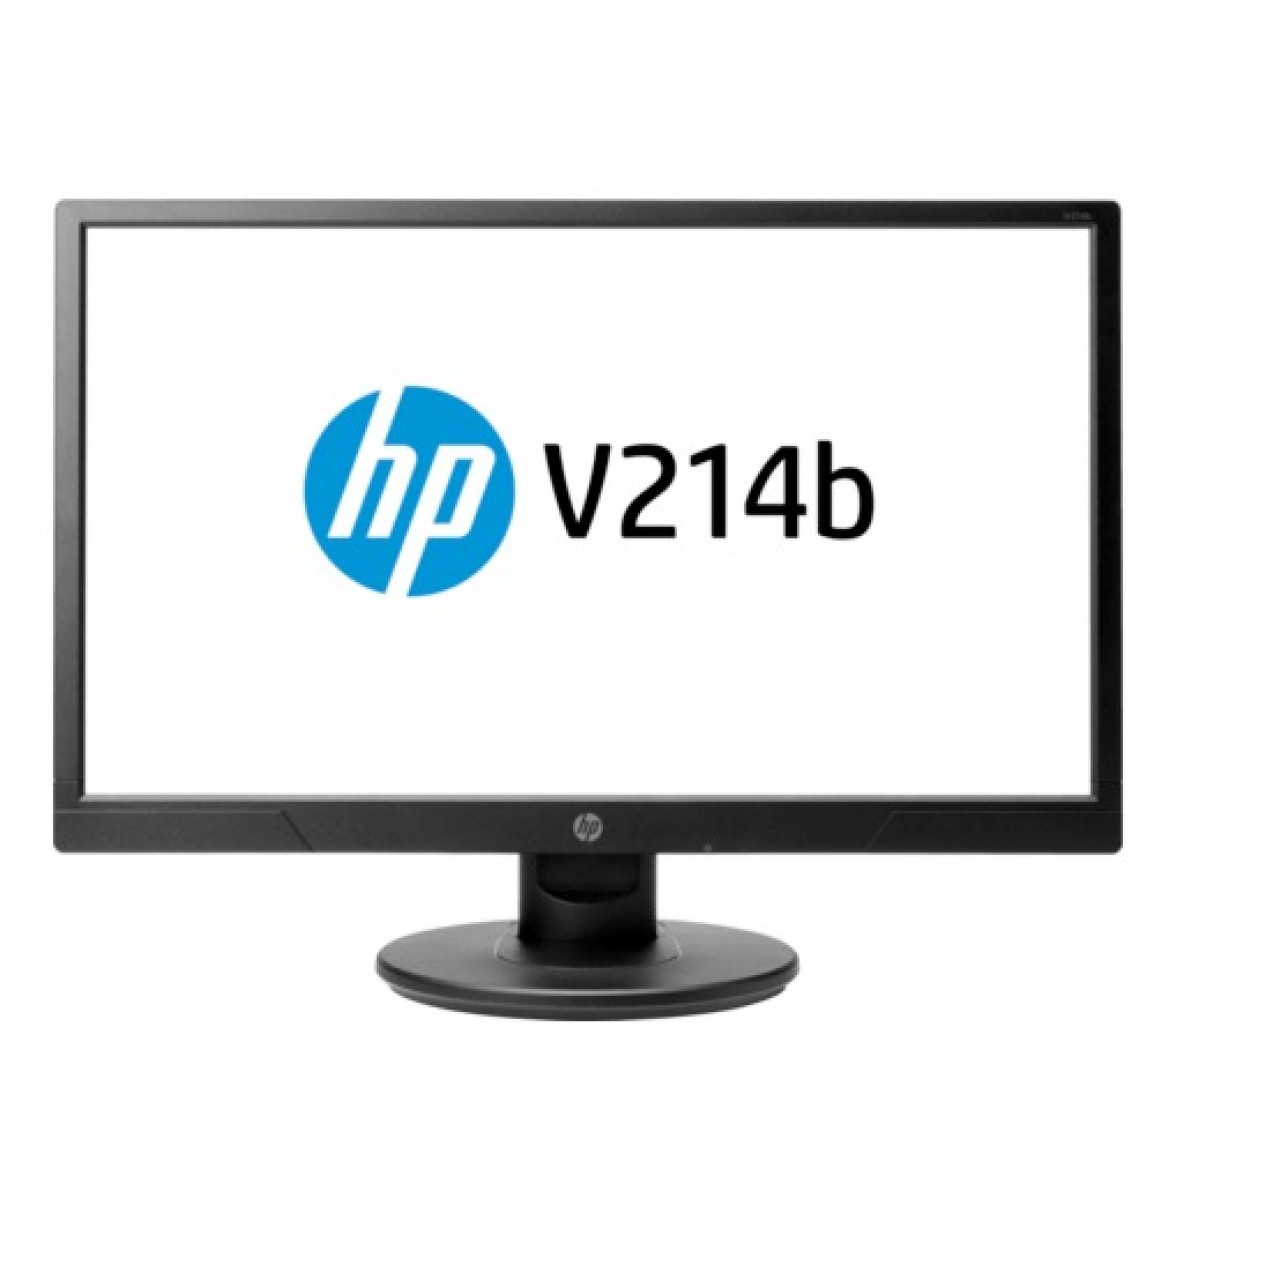 HP V214b LED Monitor For Desktop PC - 20.7”